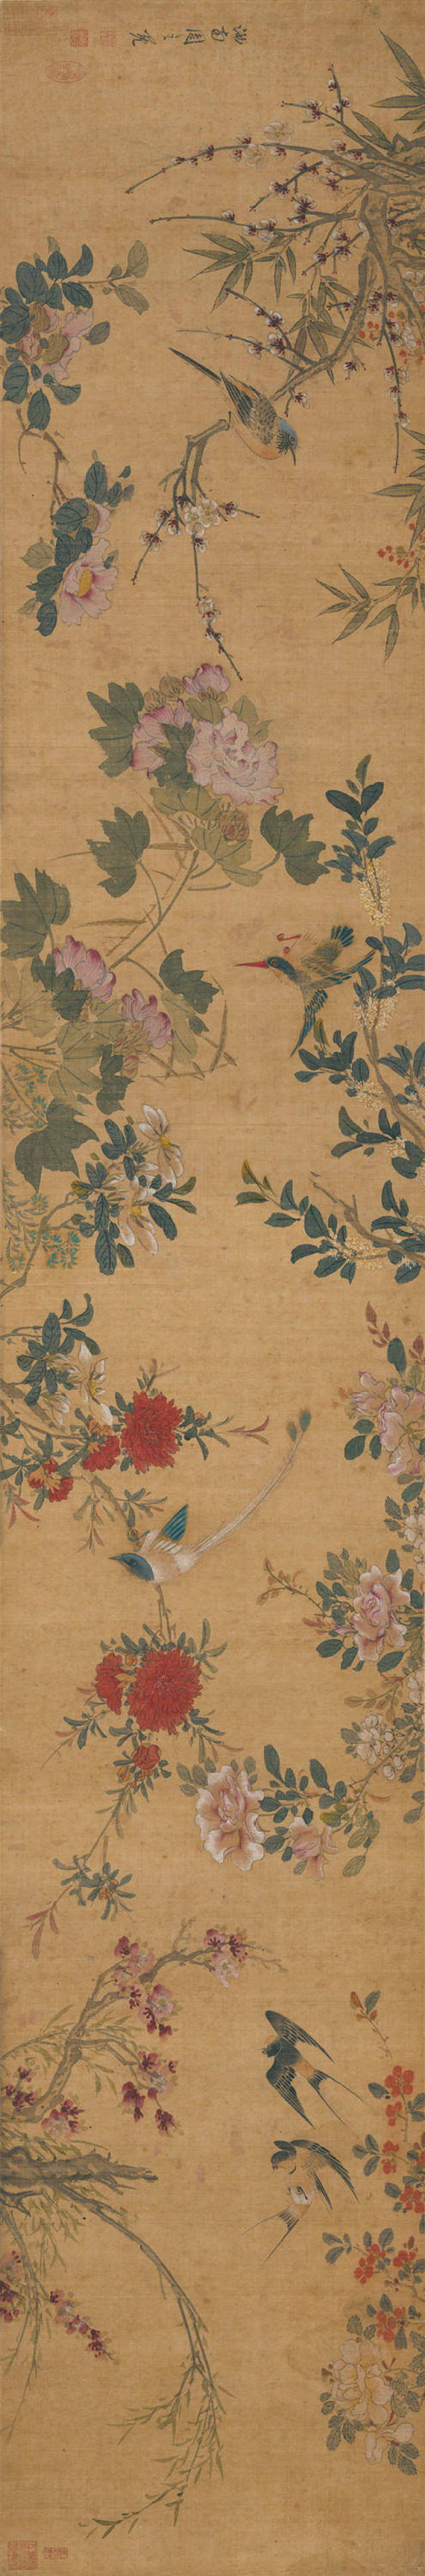 "系周之冕的晚年之作.该图勾画了四季花卉,其中木本花卉多为折枝.